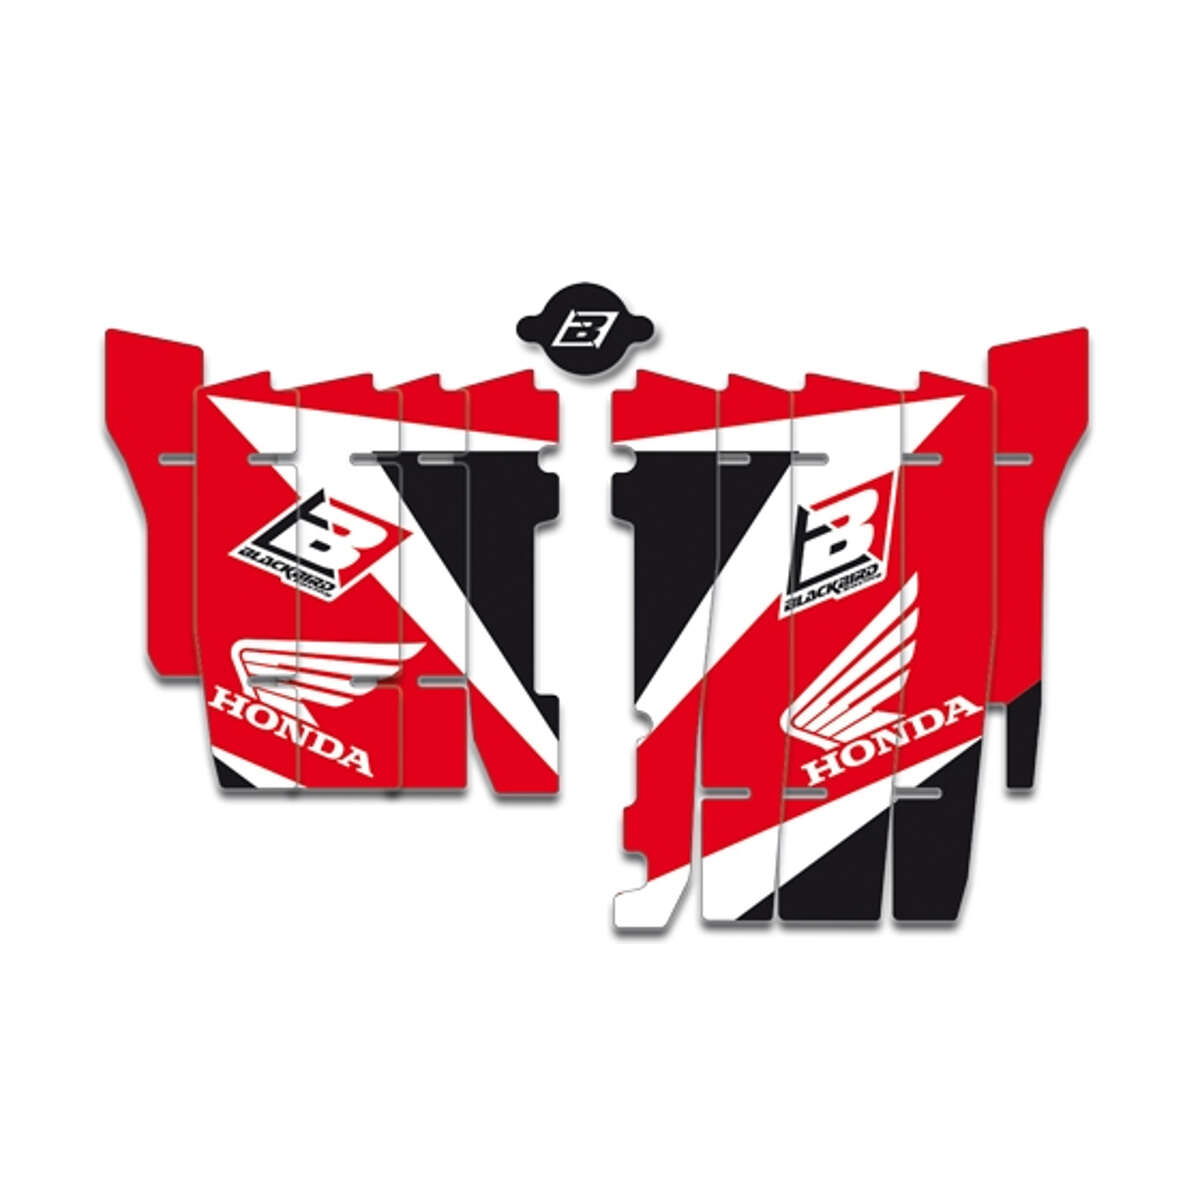 Blackbird Racing Autocollants pour Grille de Radiateur Dream 3 Honda CR-F 450/450X '17, Rouge/Blanc/Noir